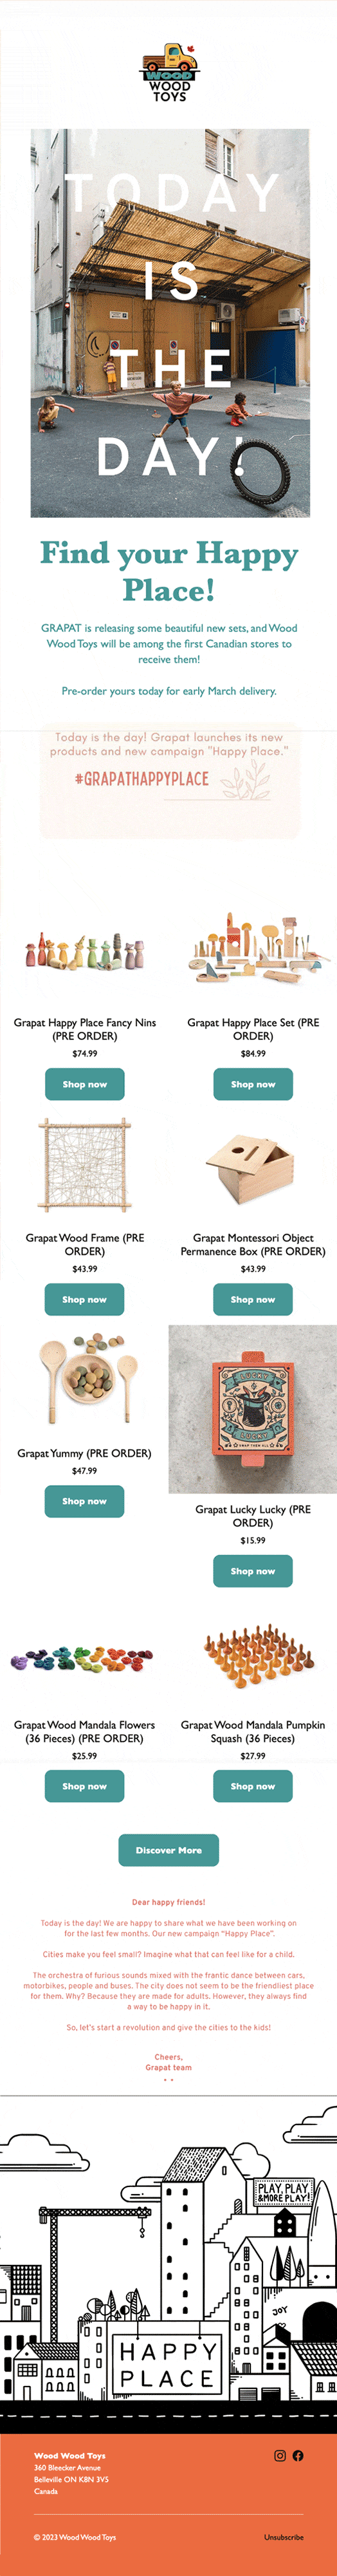 畫面為一封電子郵件，顯示 Wood Wood Toys 網路商店有新到貨的美麗木製玩具商品。